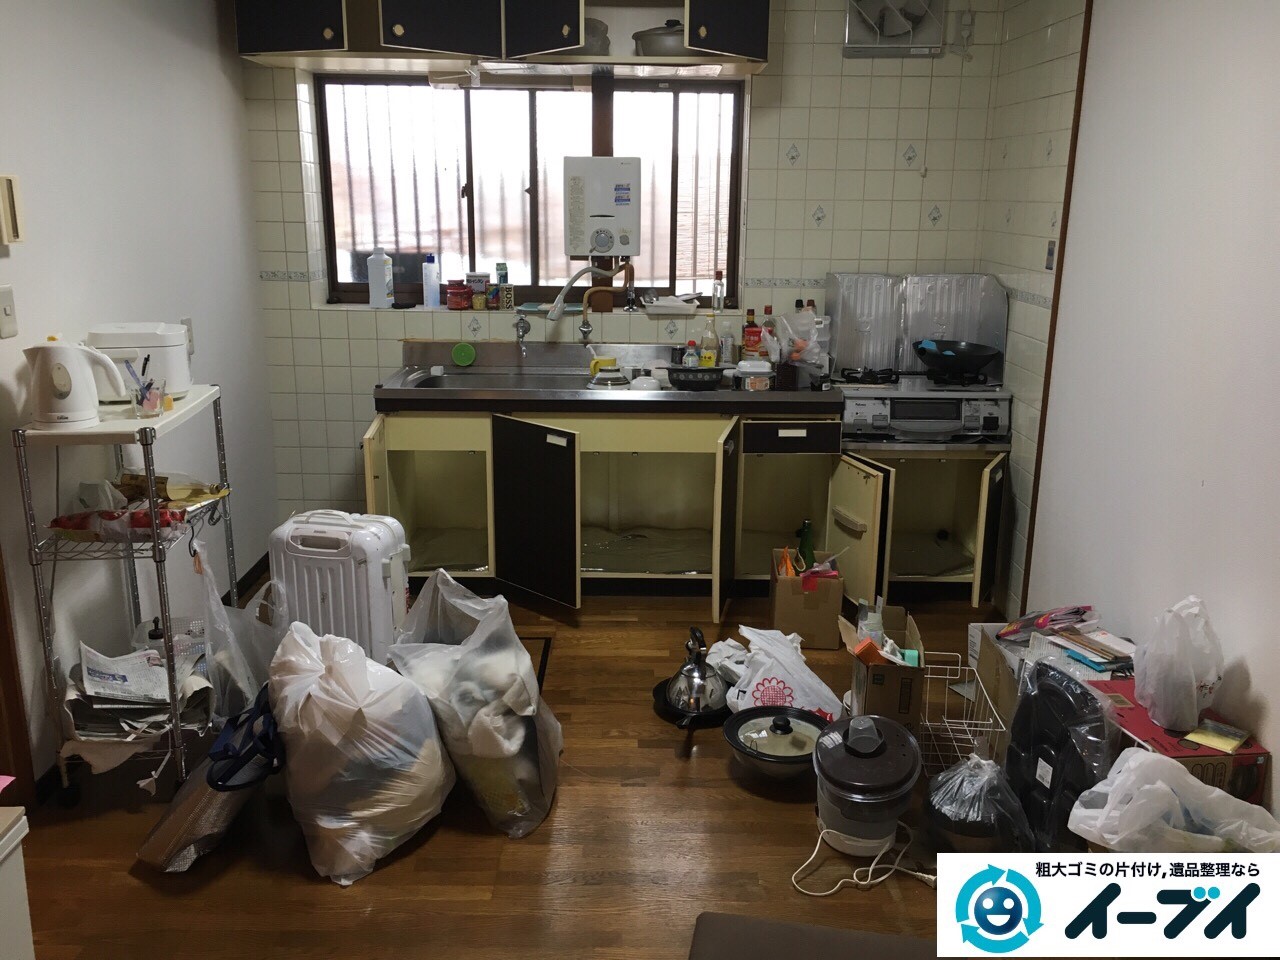 12月13日　大阪府枚方市で部屋の引越しに伴う粗大ゴミの不用品回収をしました。写真4